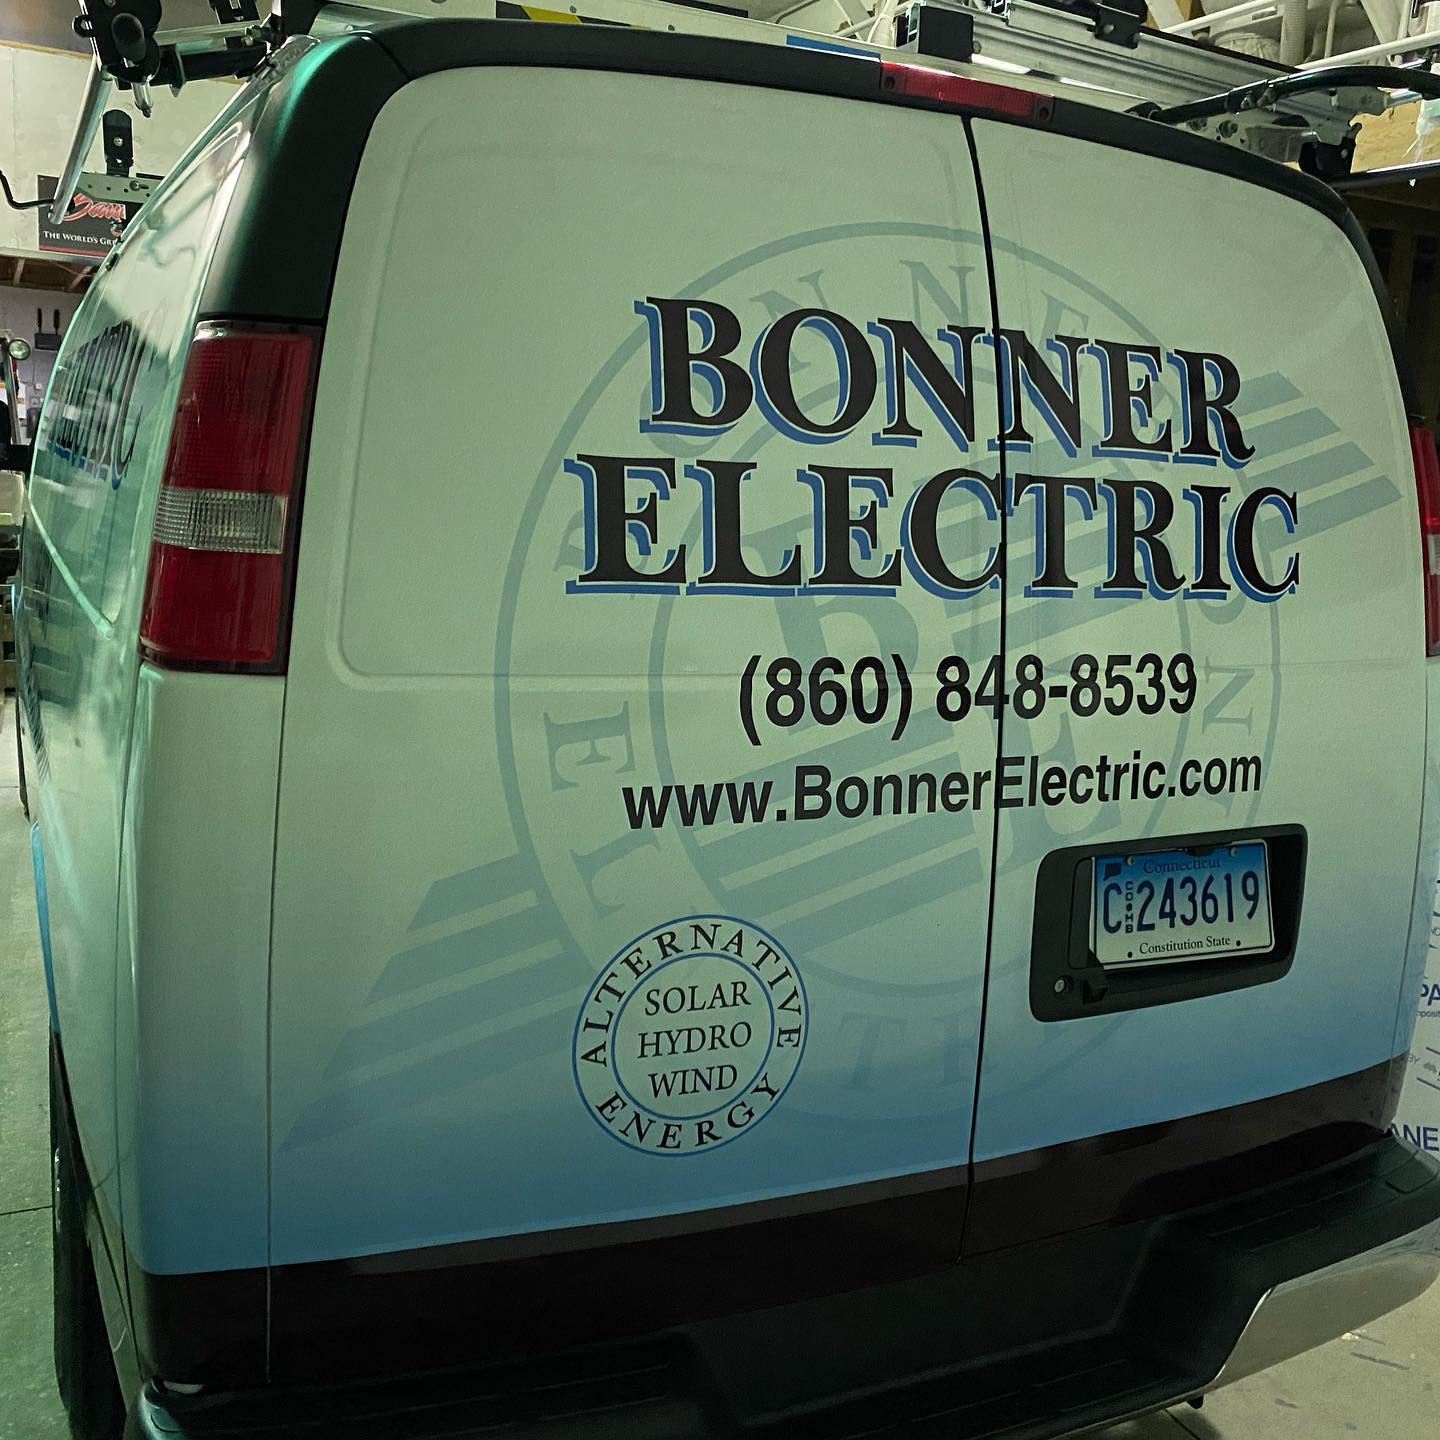 Bonner Electric Norwich, Connecticut